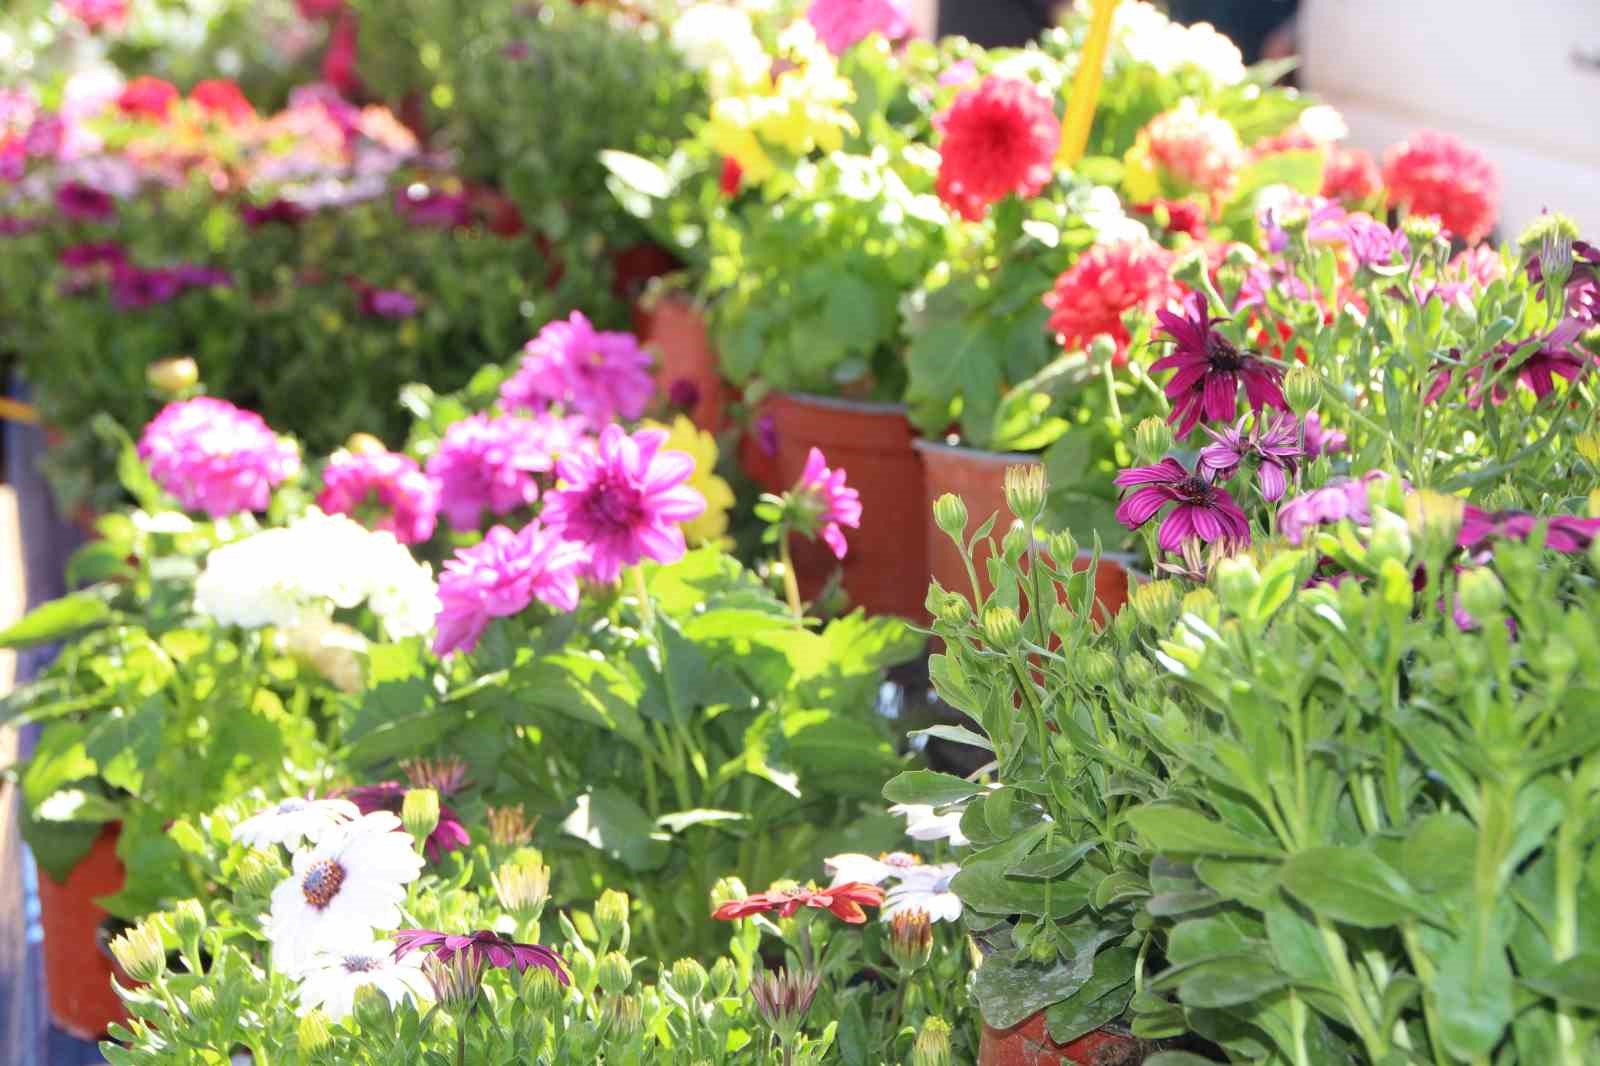 Rengarenk çiçekler pazar tezgahlarını süsledi